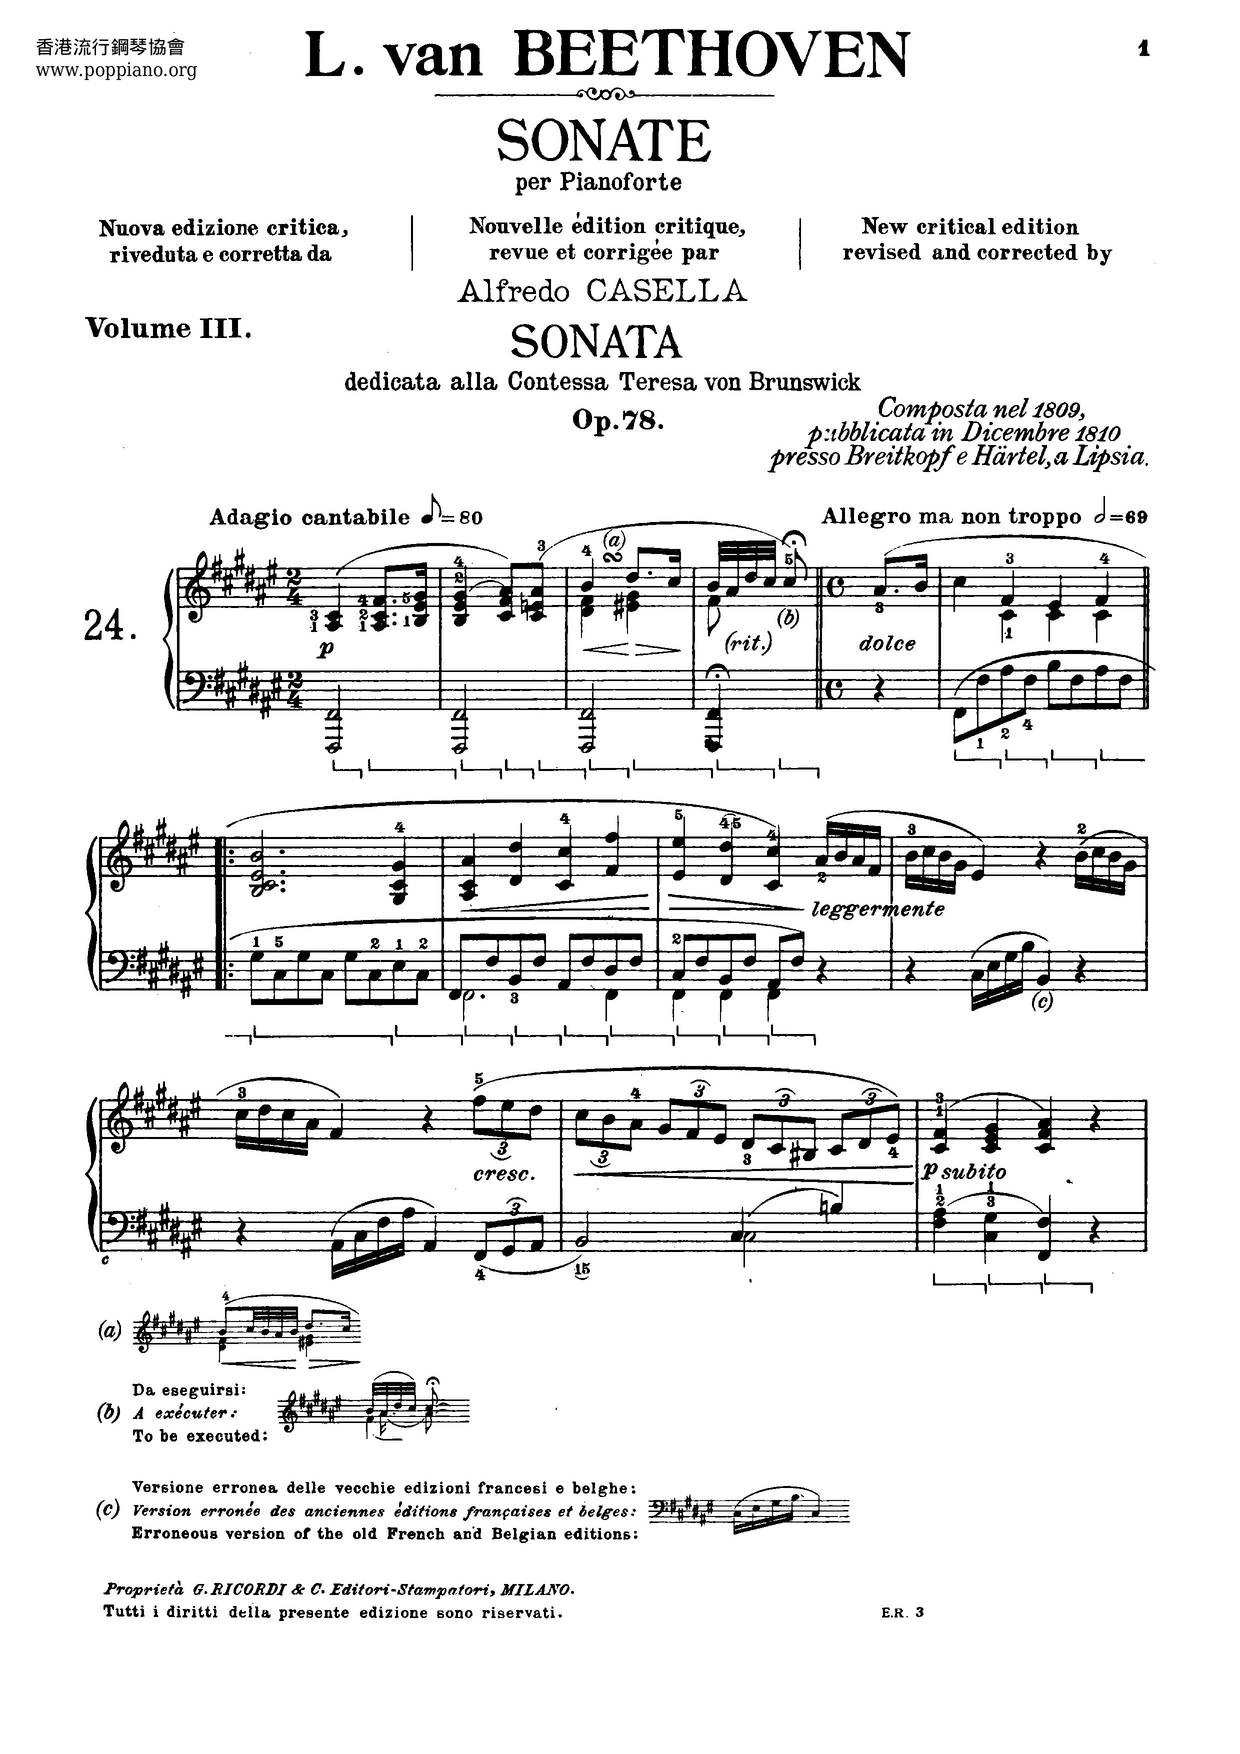 Complete Sonatas For Piano琴谱